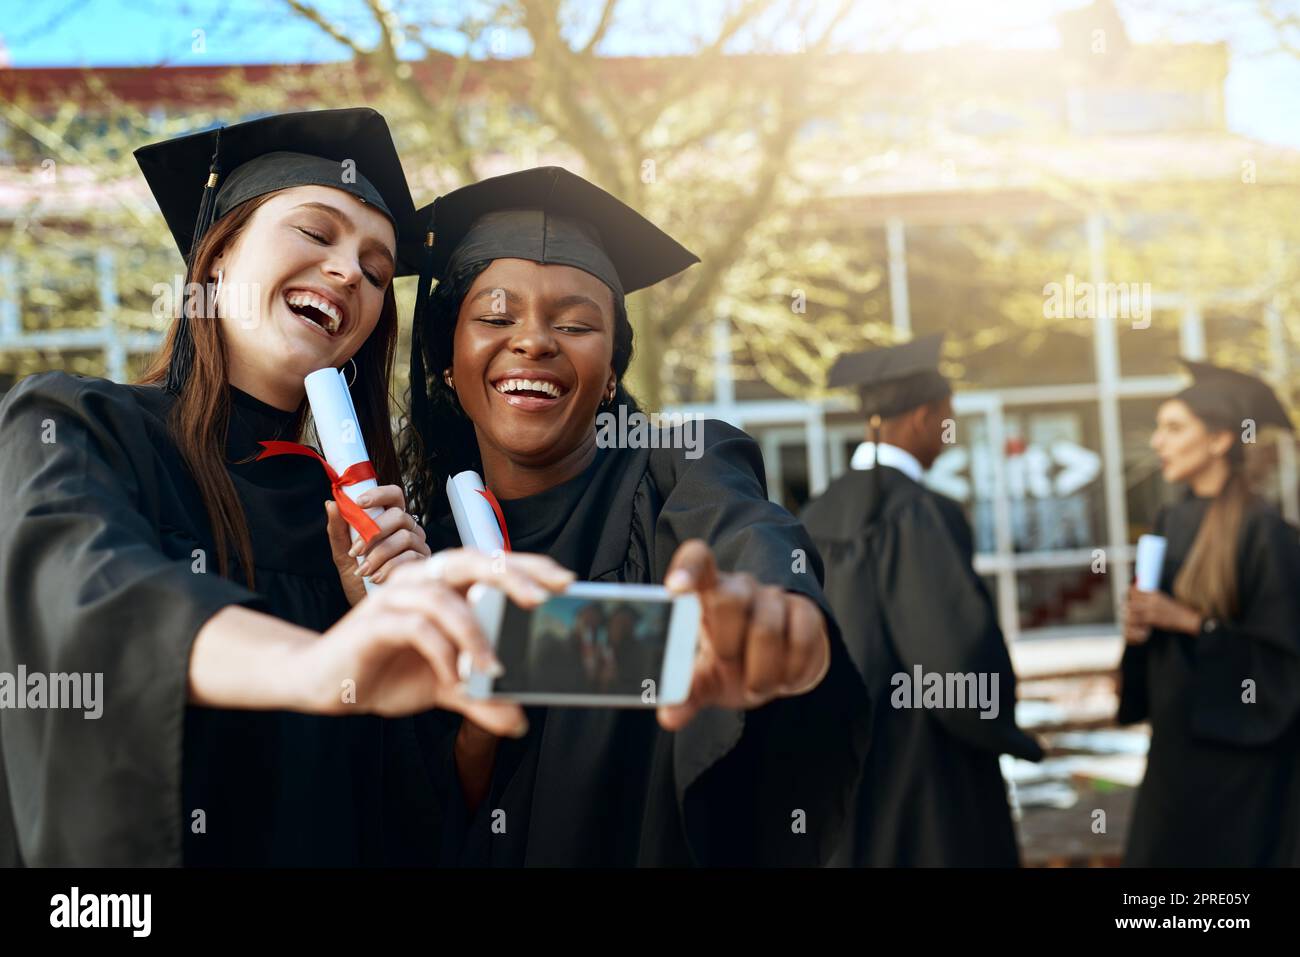 Unsere Träume wurden wahr: Zwei junge Frauen, die am Tag der Abschlussfeier Selfies mit einem Mobiltelefon gemacht haben. Stockfoto